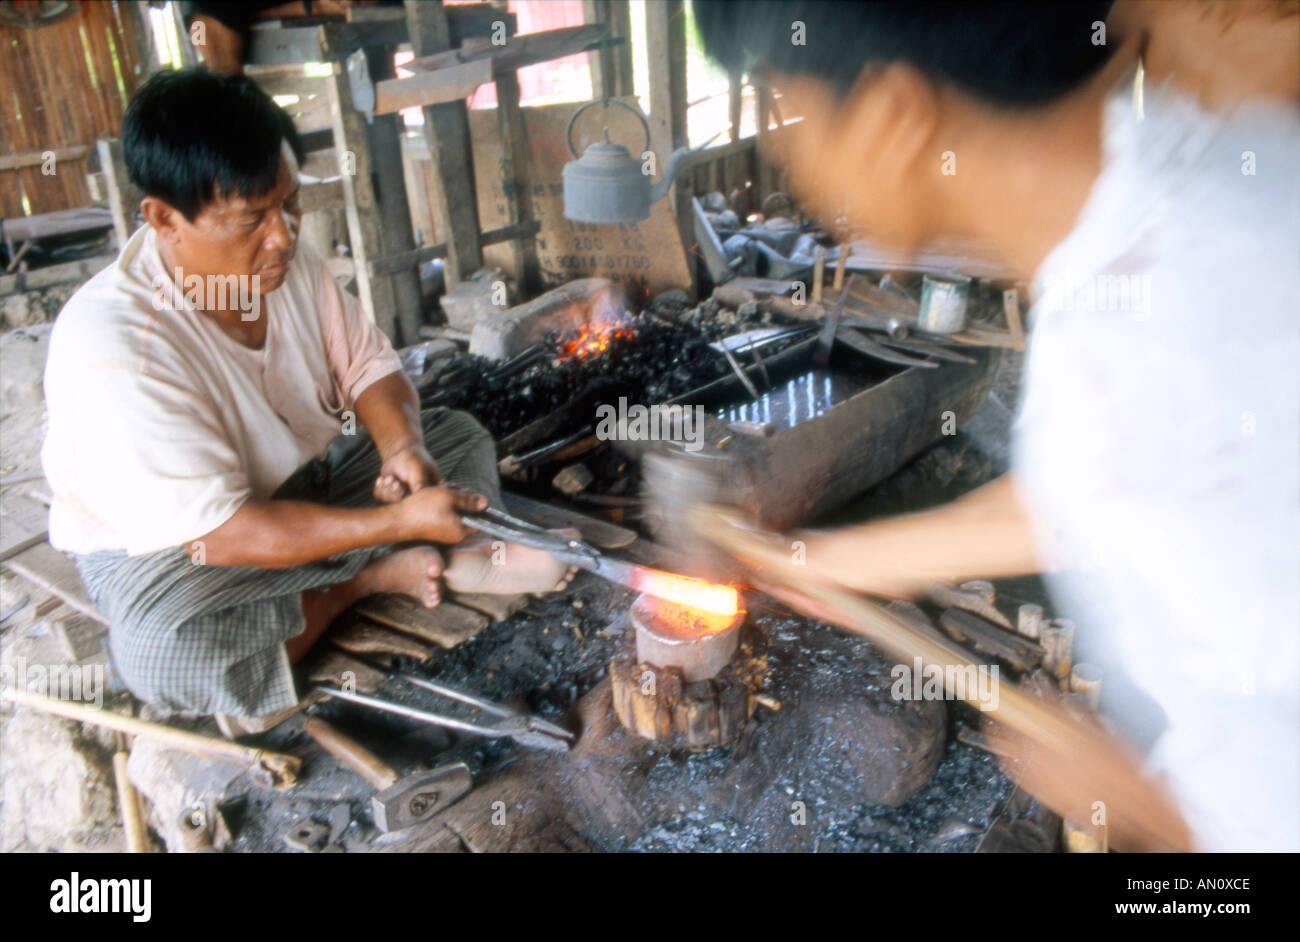 Ironmonger at work making metal pota and pans Inle Lake Myanmar Burma Stock Photo